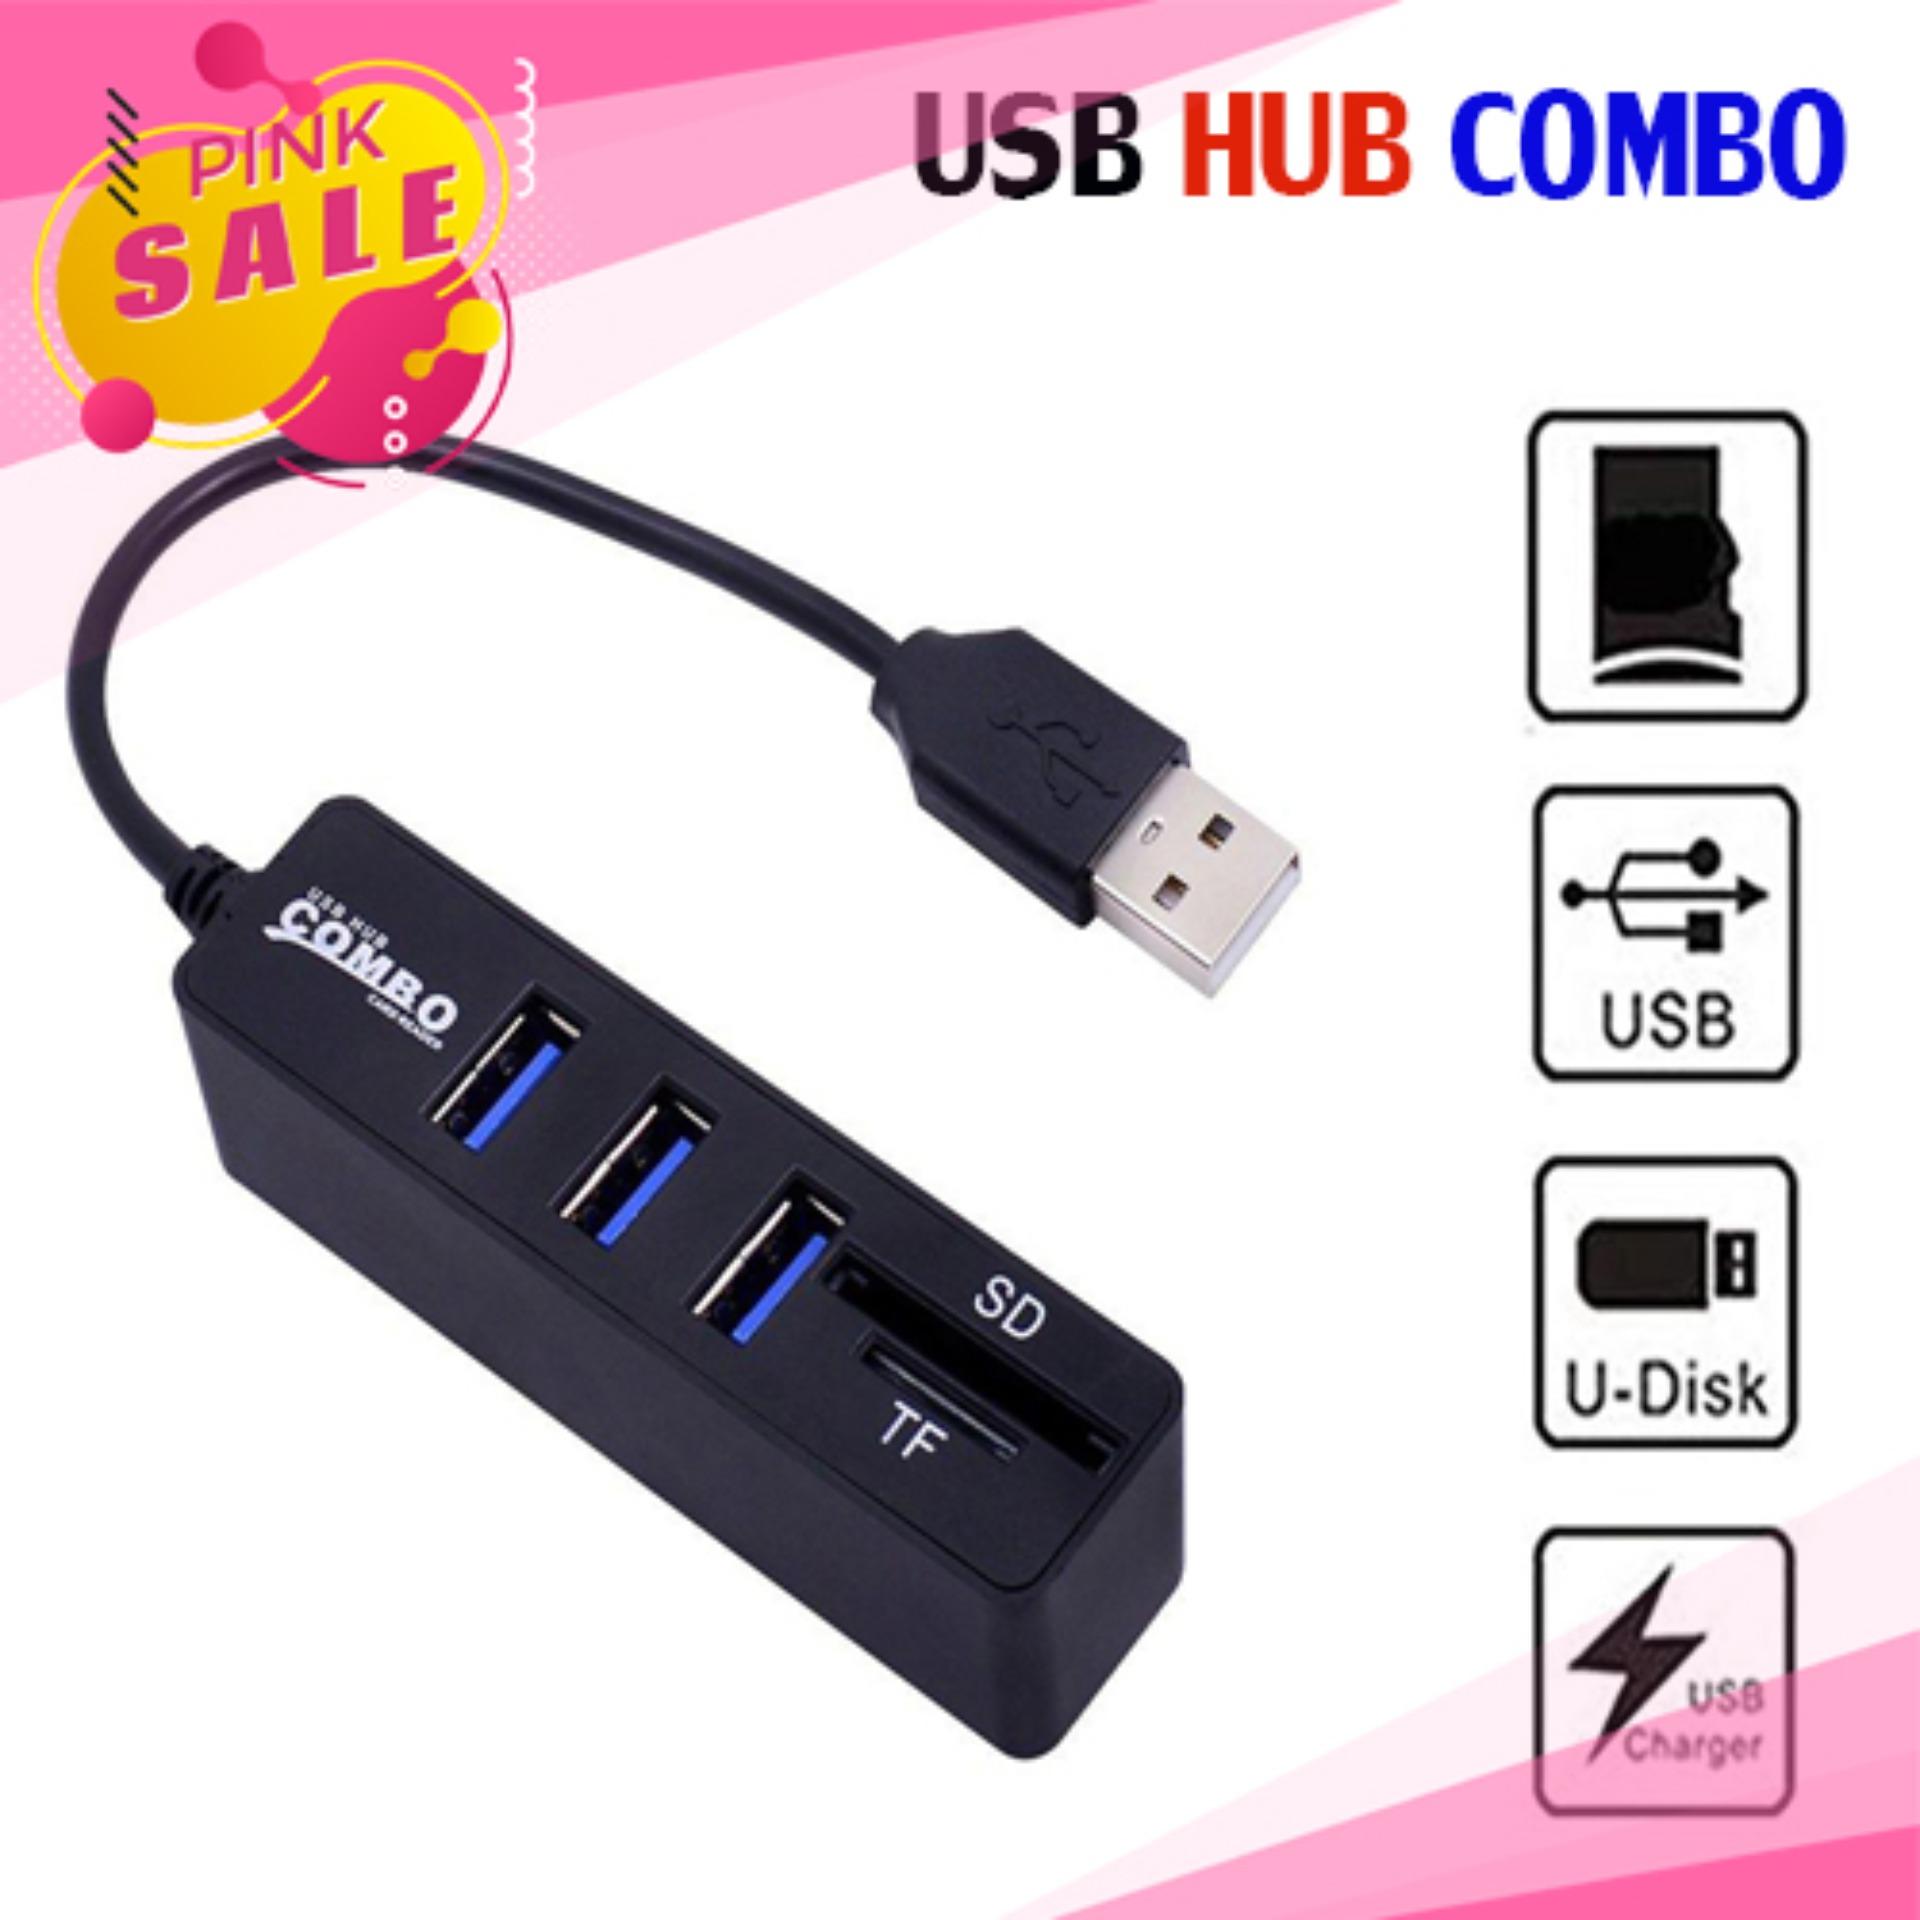 อุปกรณ์เชื่อมต่อคอมพิวเตอร์ USB 2.0/3.1 Hub Combo พร้อม Card Reader [เพิ่มช่อง USB+การ์ดรีดเดอร์]